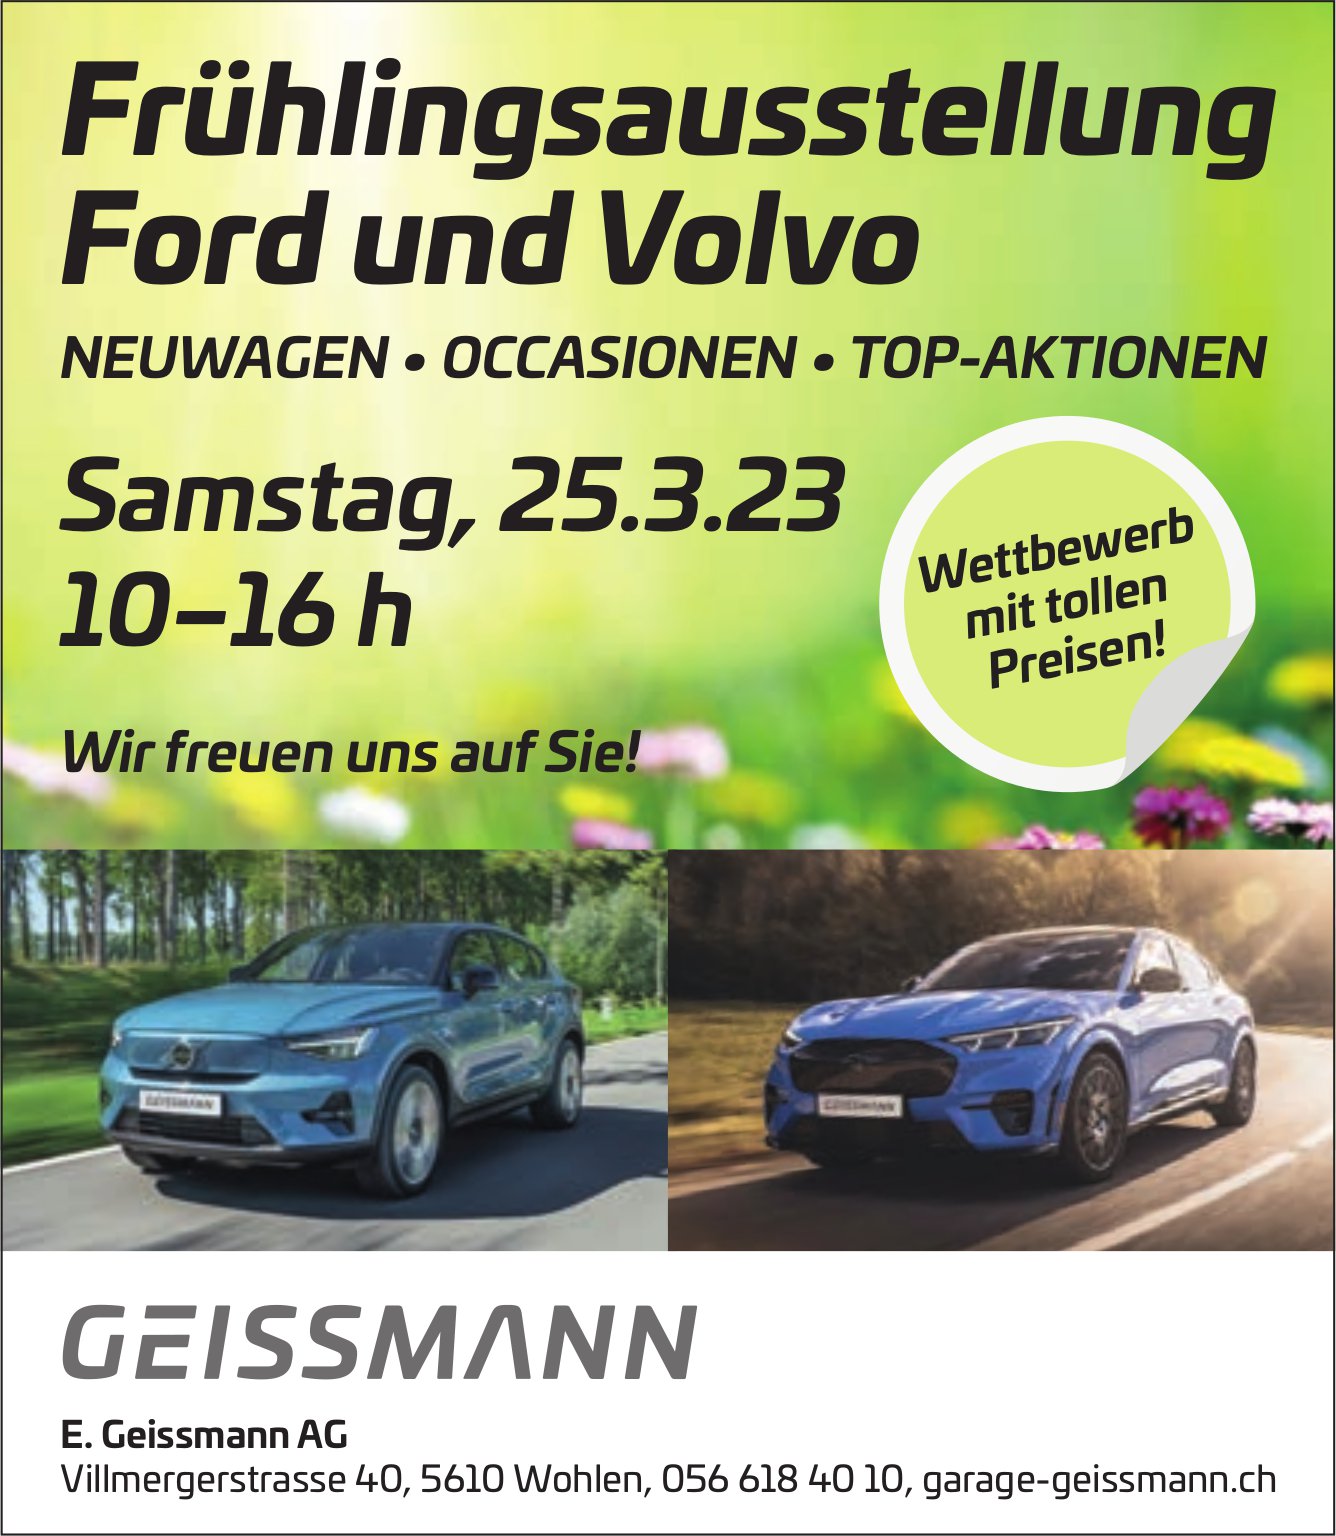 Frühlingsausstellung, 25. März, E. Geissmann AG, Wohlen